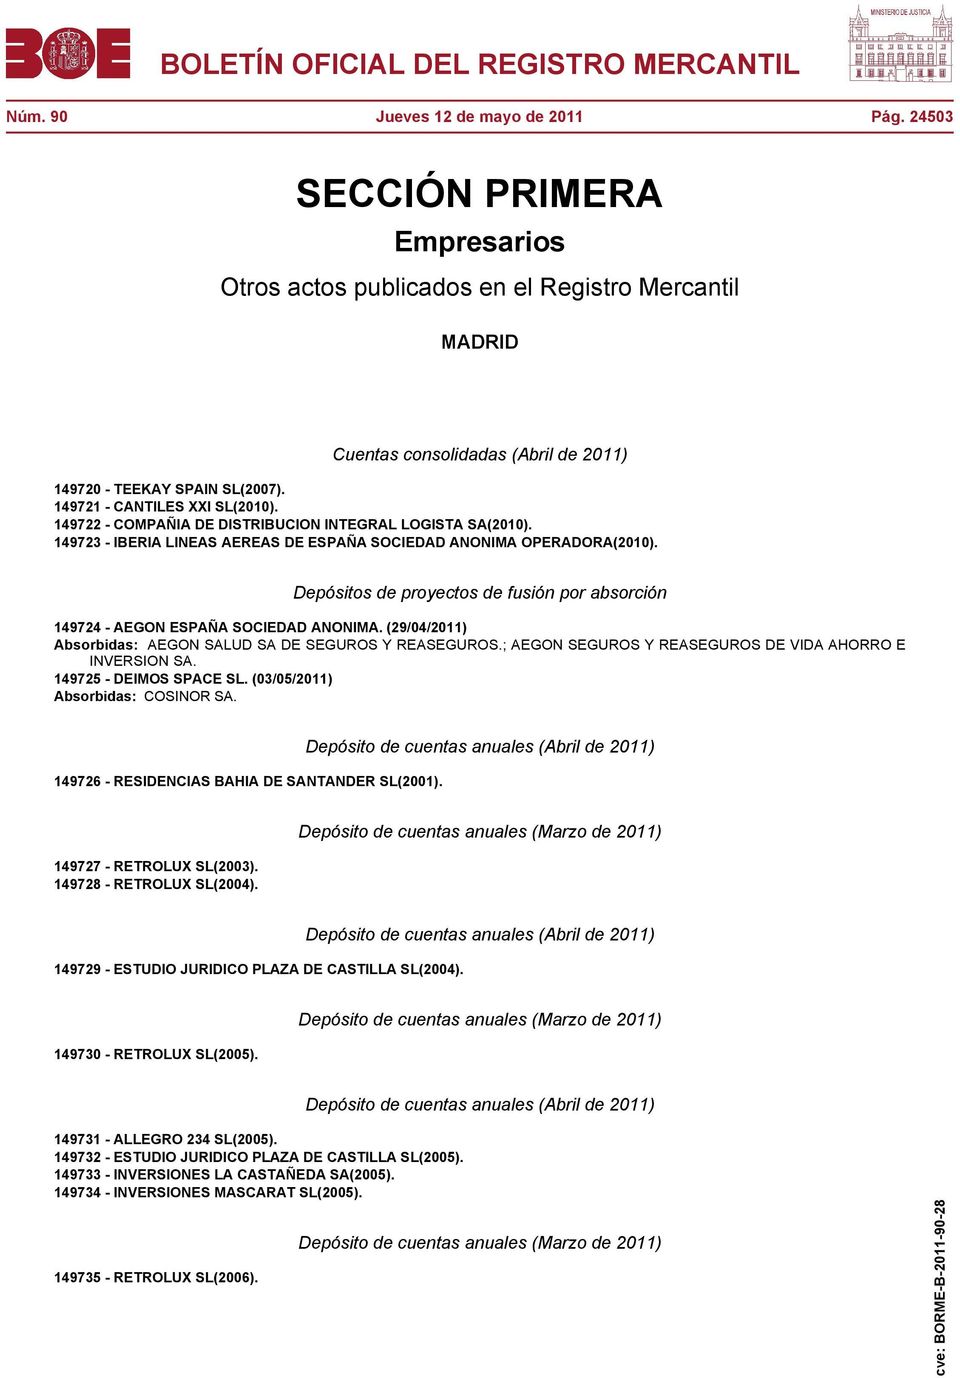 Depósitos de proyectos de fusión por absorción 149724 - AEGON ESPAÑA SOCIEDAD ANONIMA. (29/04/2011) Absorbidas: AEGON SALUD SA DE SEGUROS Y REASEGUROS.